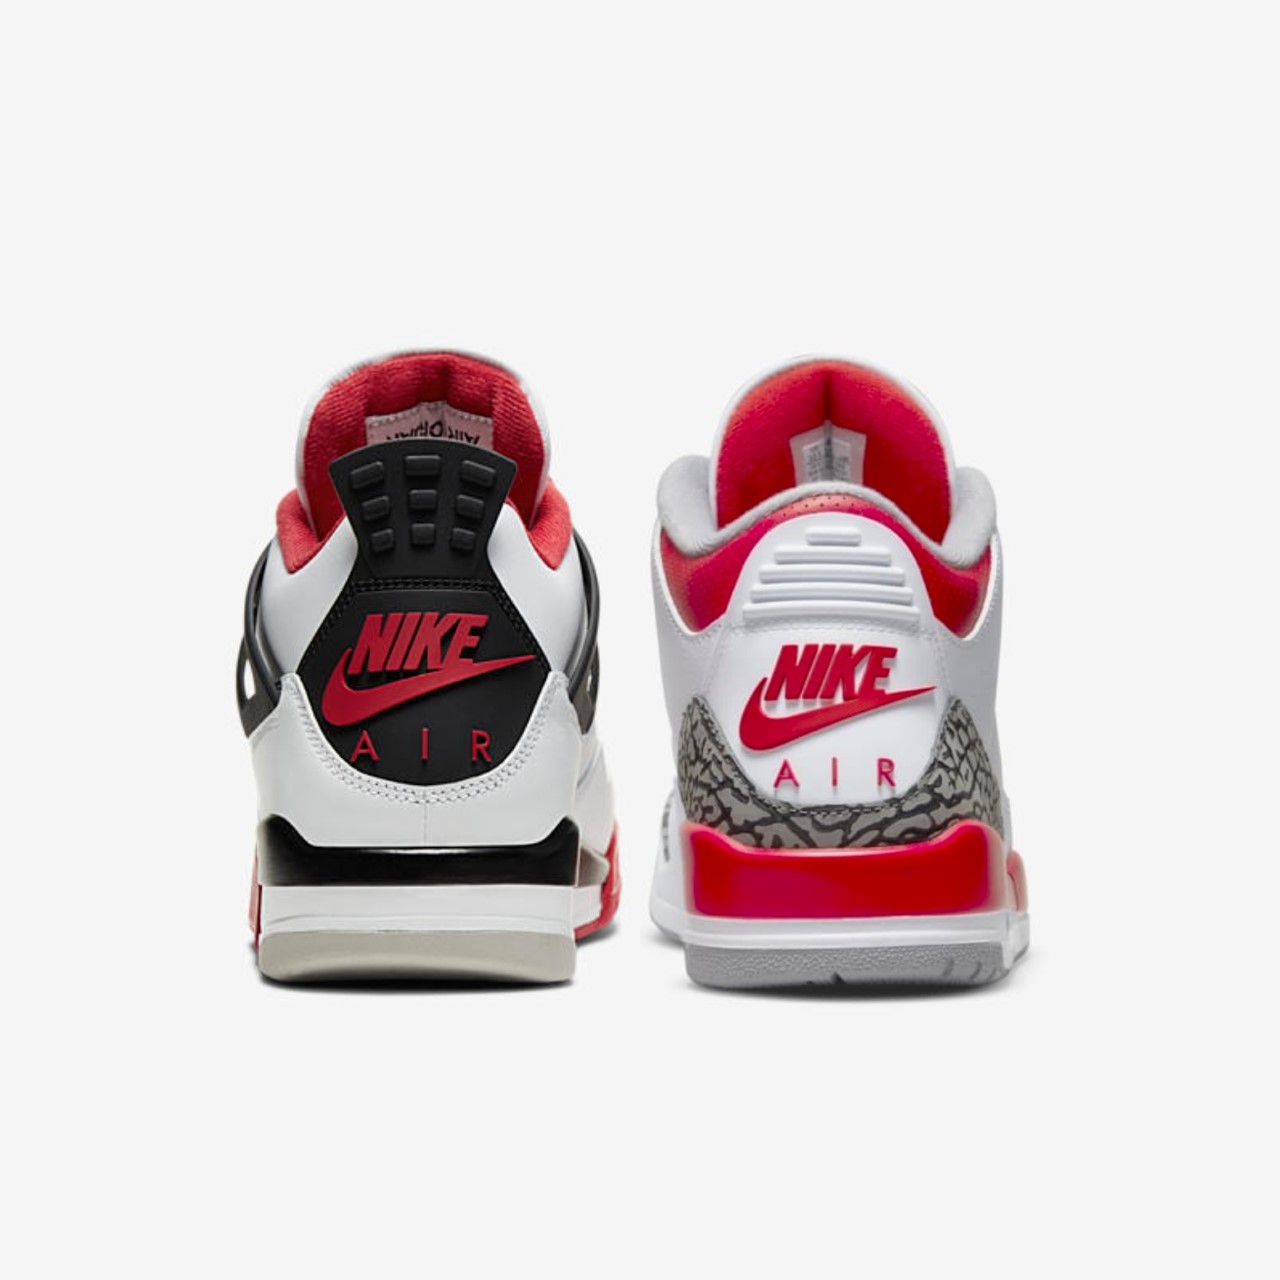 Fire Red Comparison: Air Jordan 3 vs Air Jordan 4